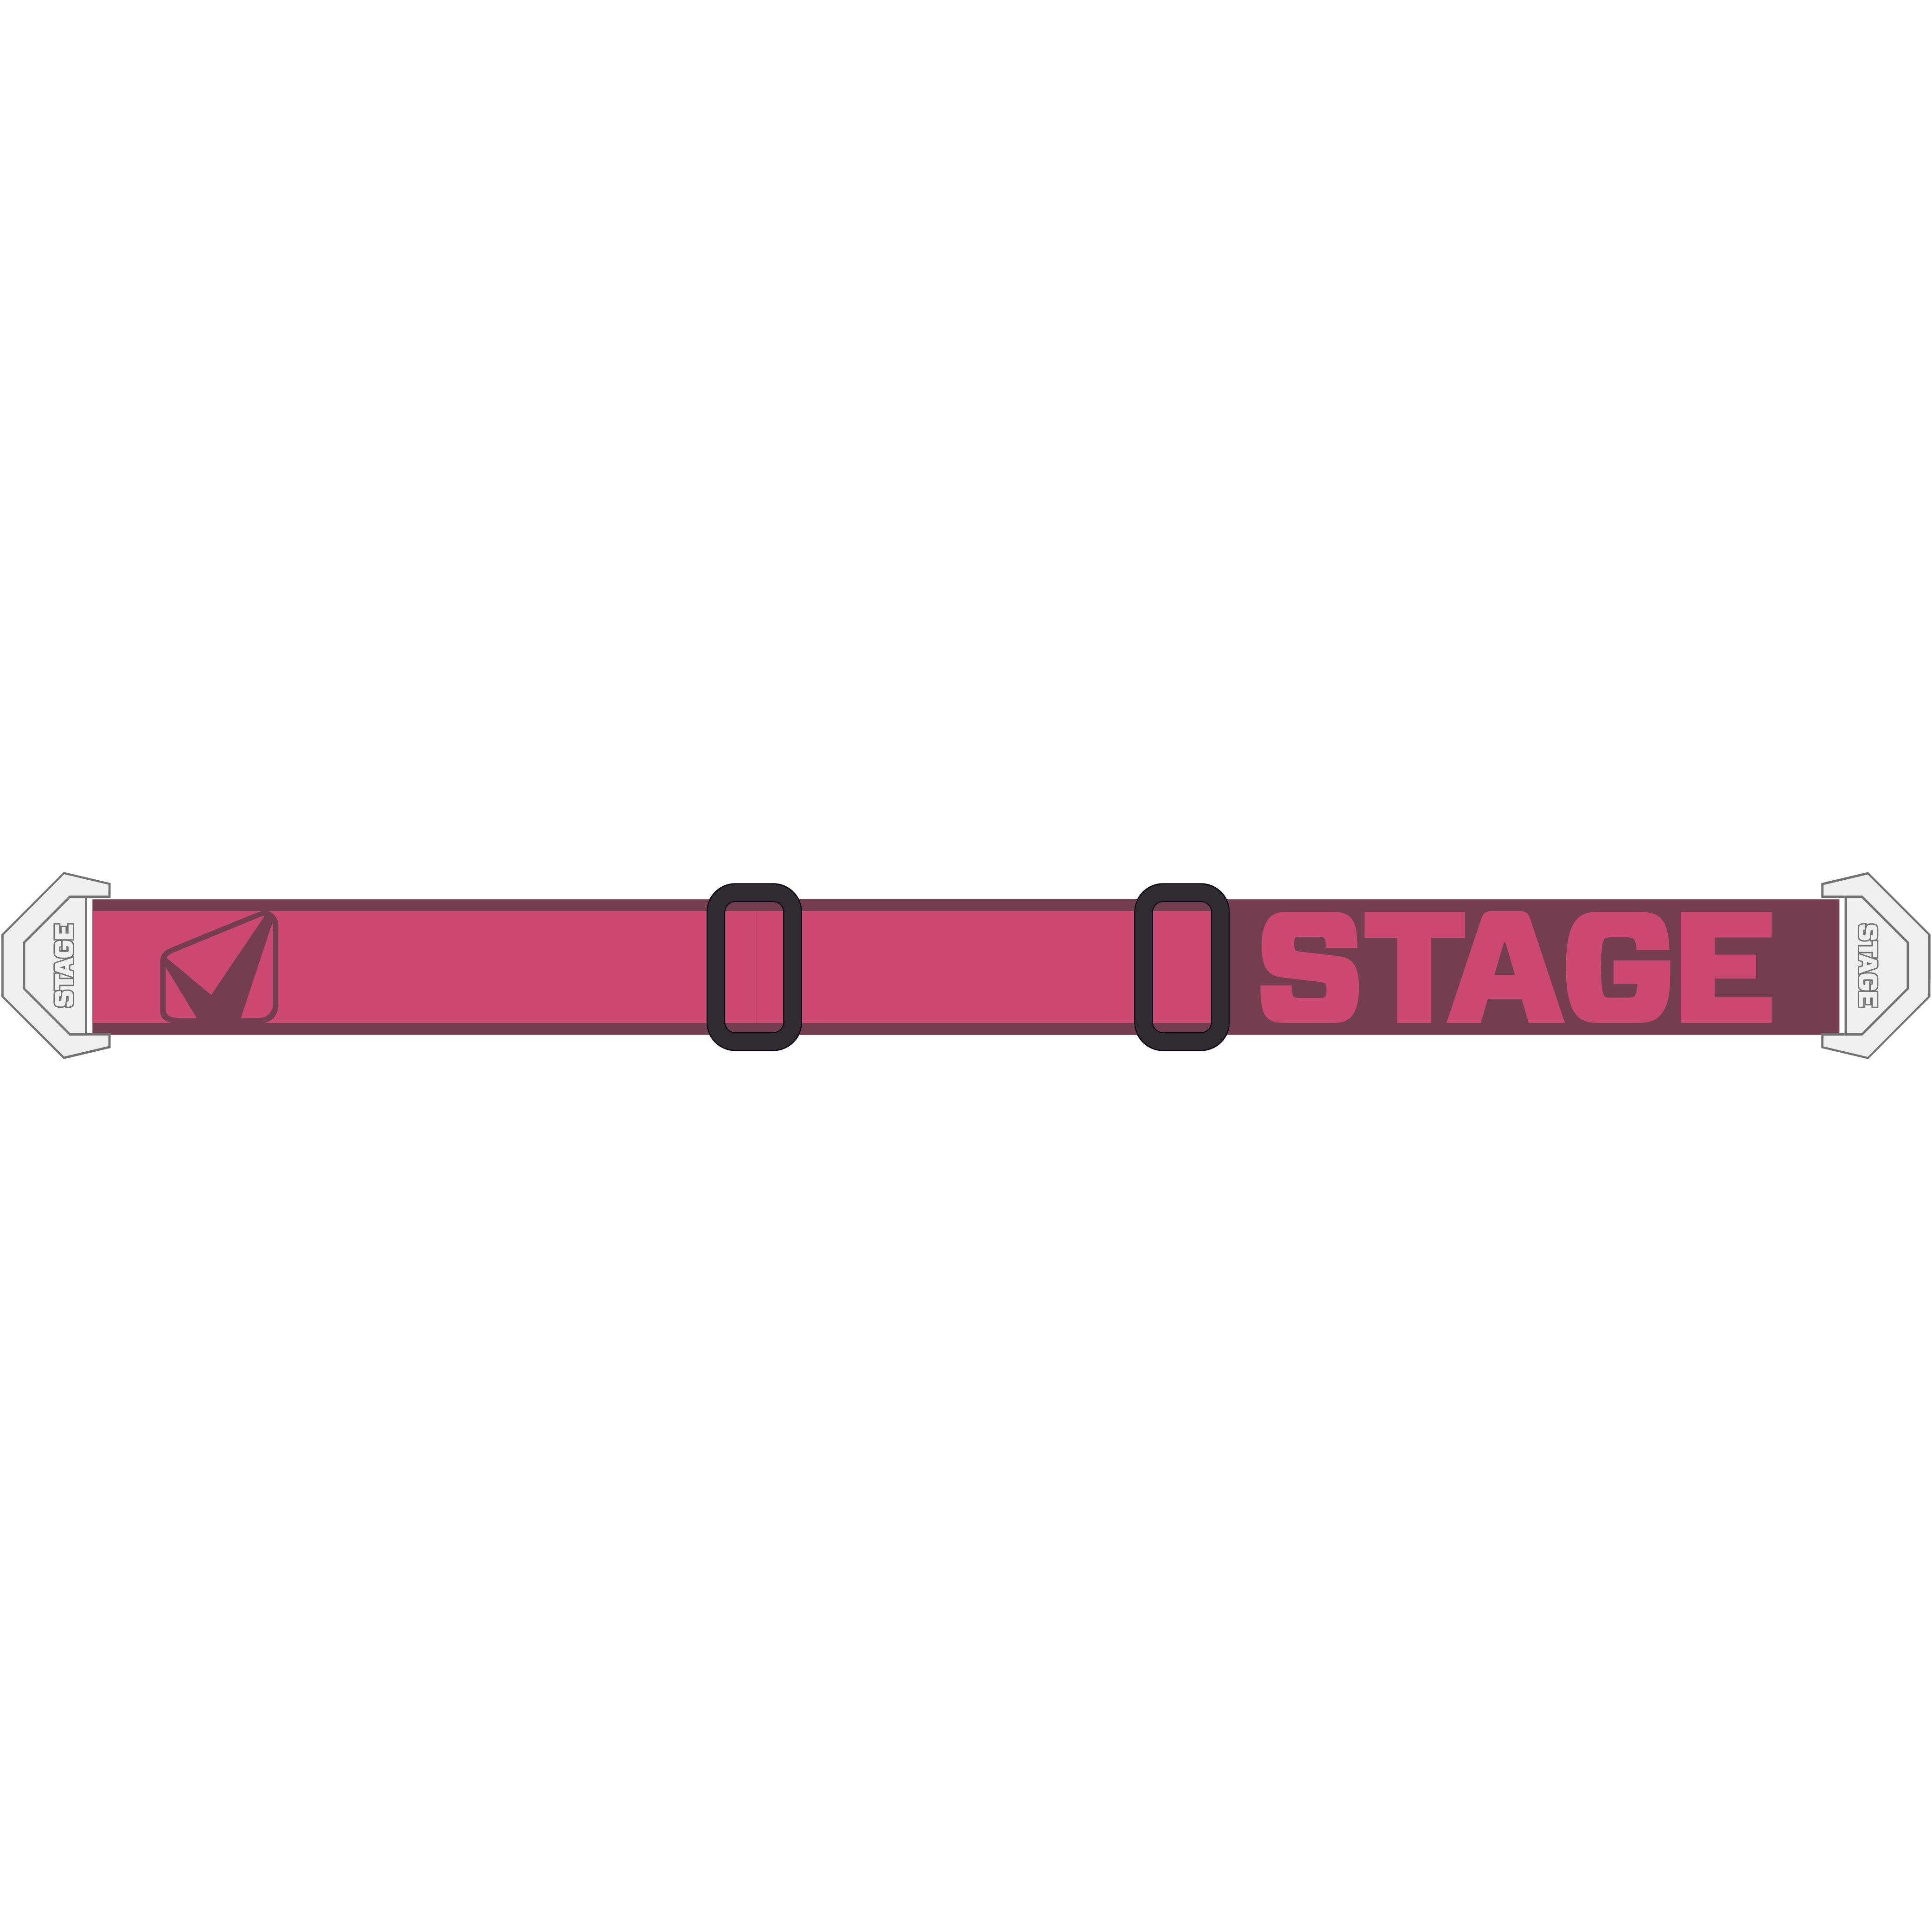 StageStuntStrap-Rose.jpg